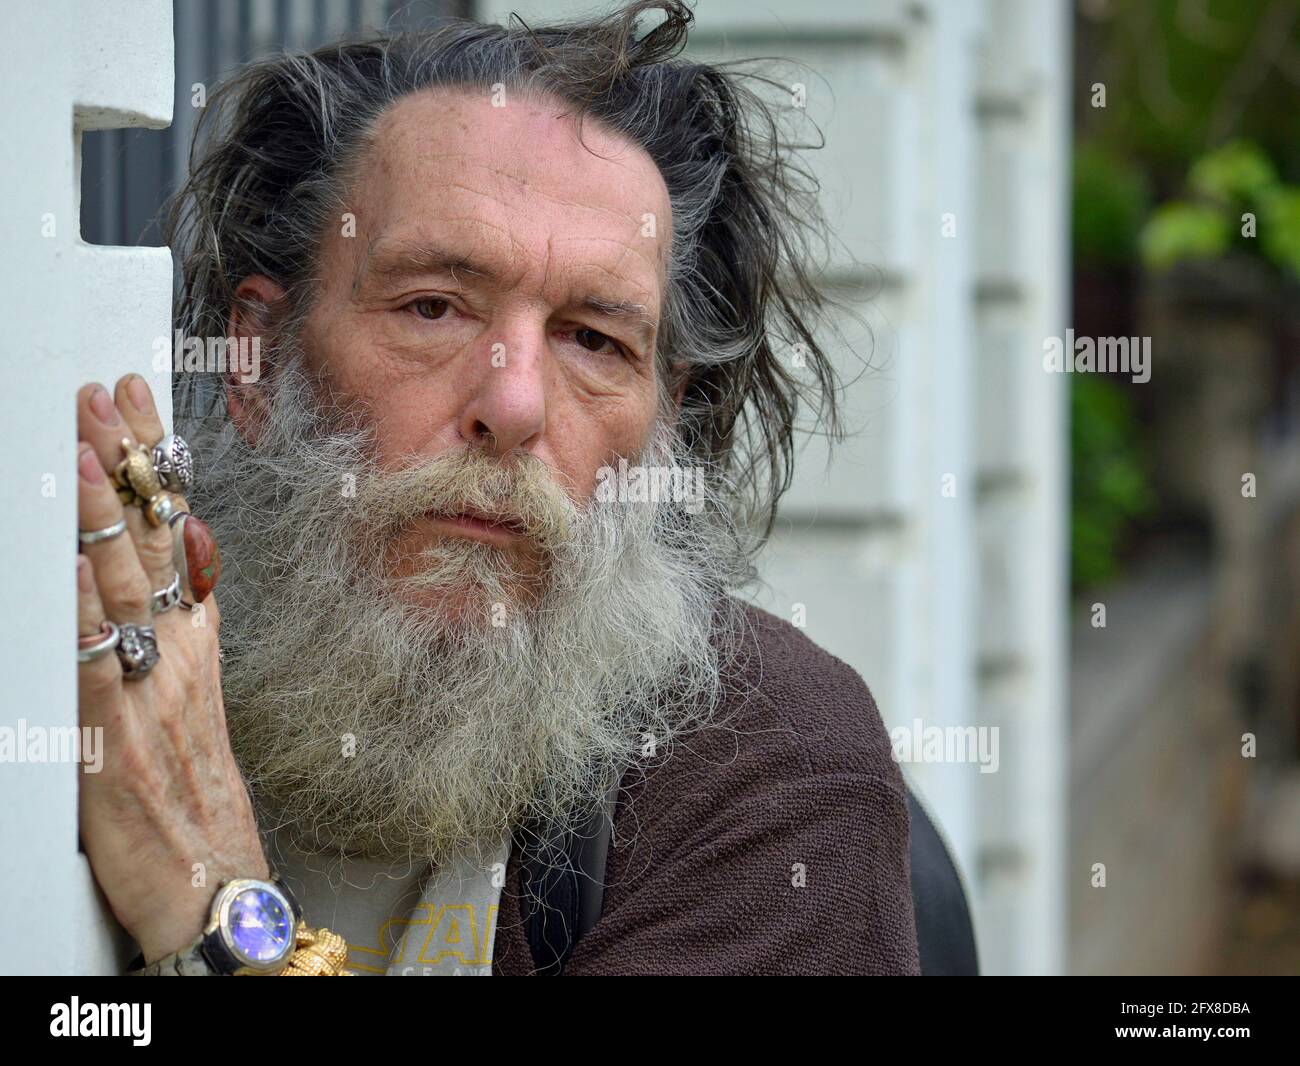 Vieux homme caucasien, digne d'émotion, avec une barbe épaisse et des cheveux distraits derrière un mur, regarde le spectateur et montre les anneaux sur sa main. Banque D'Images